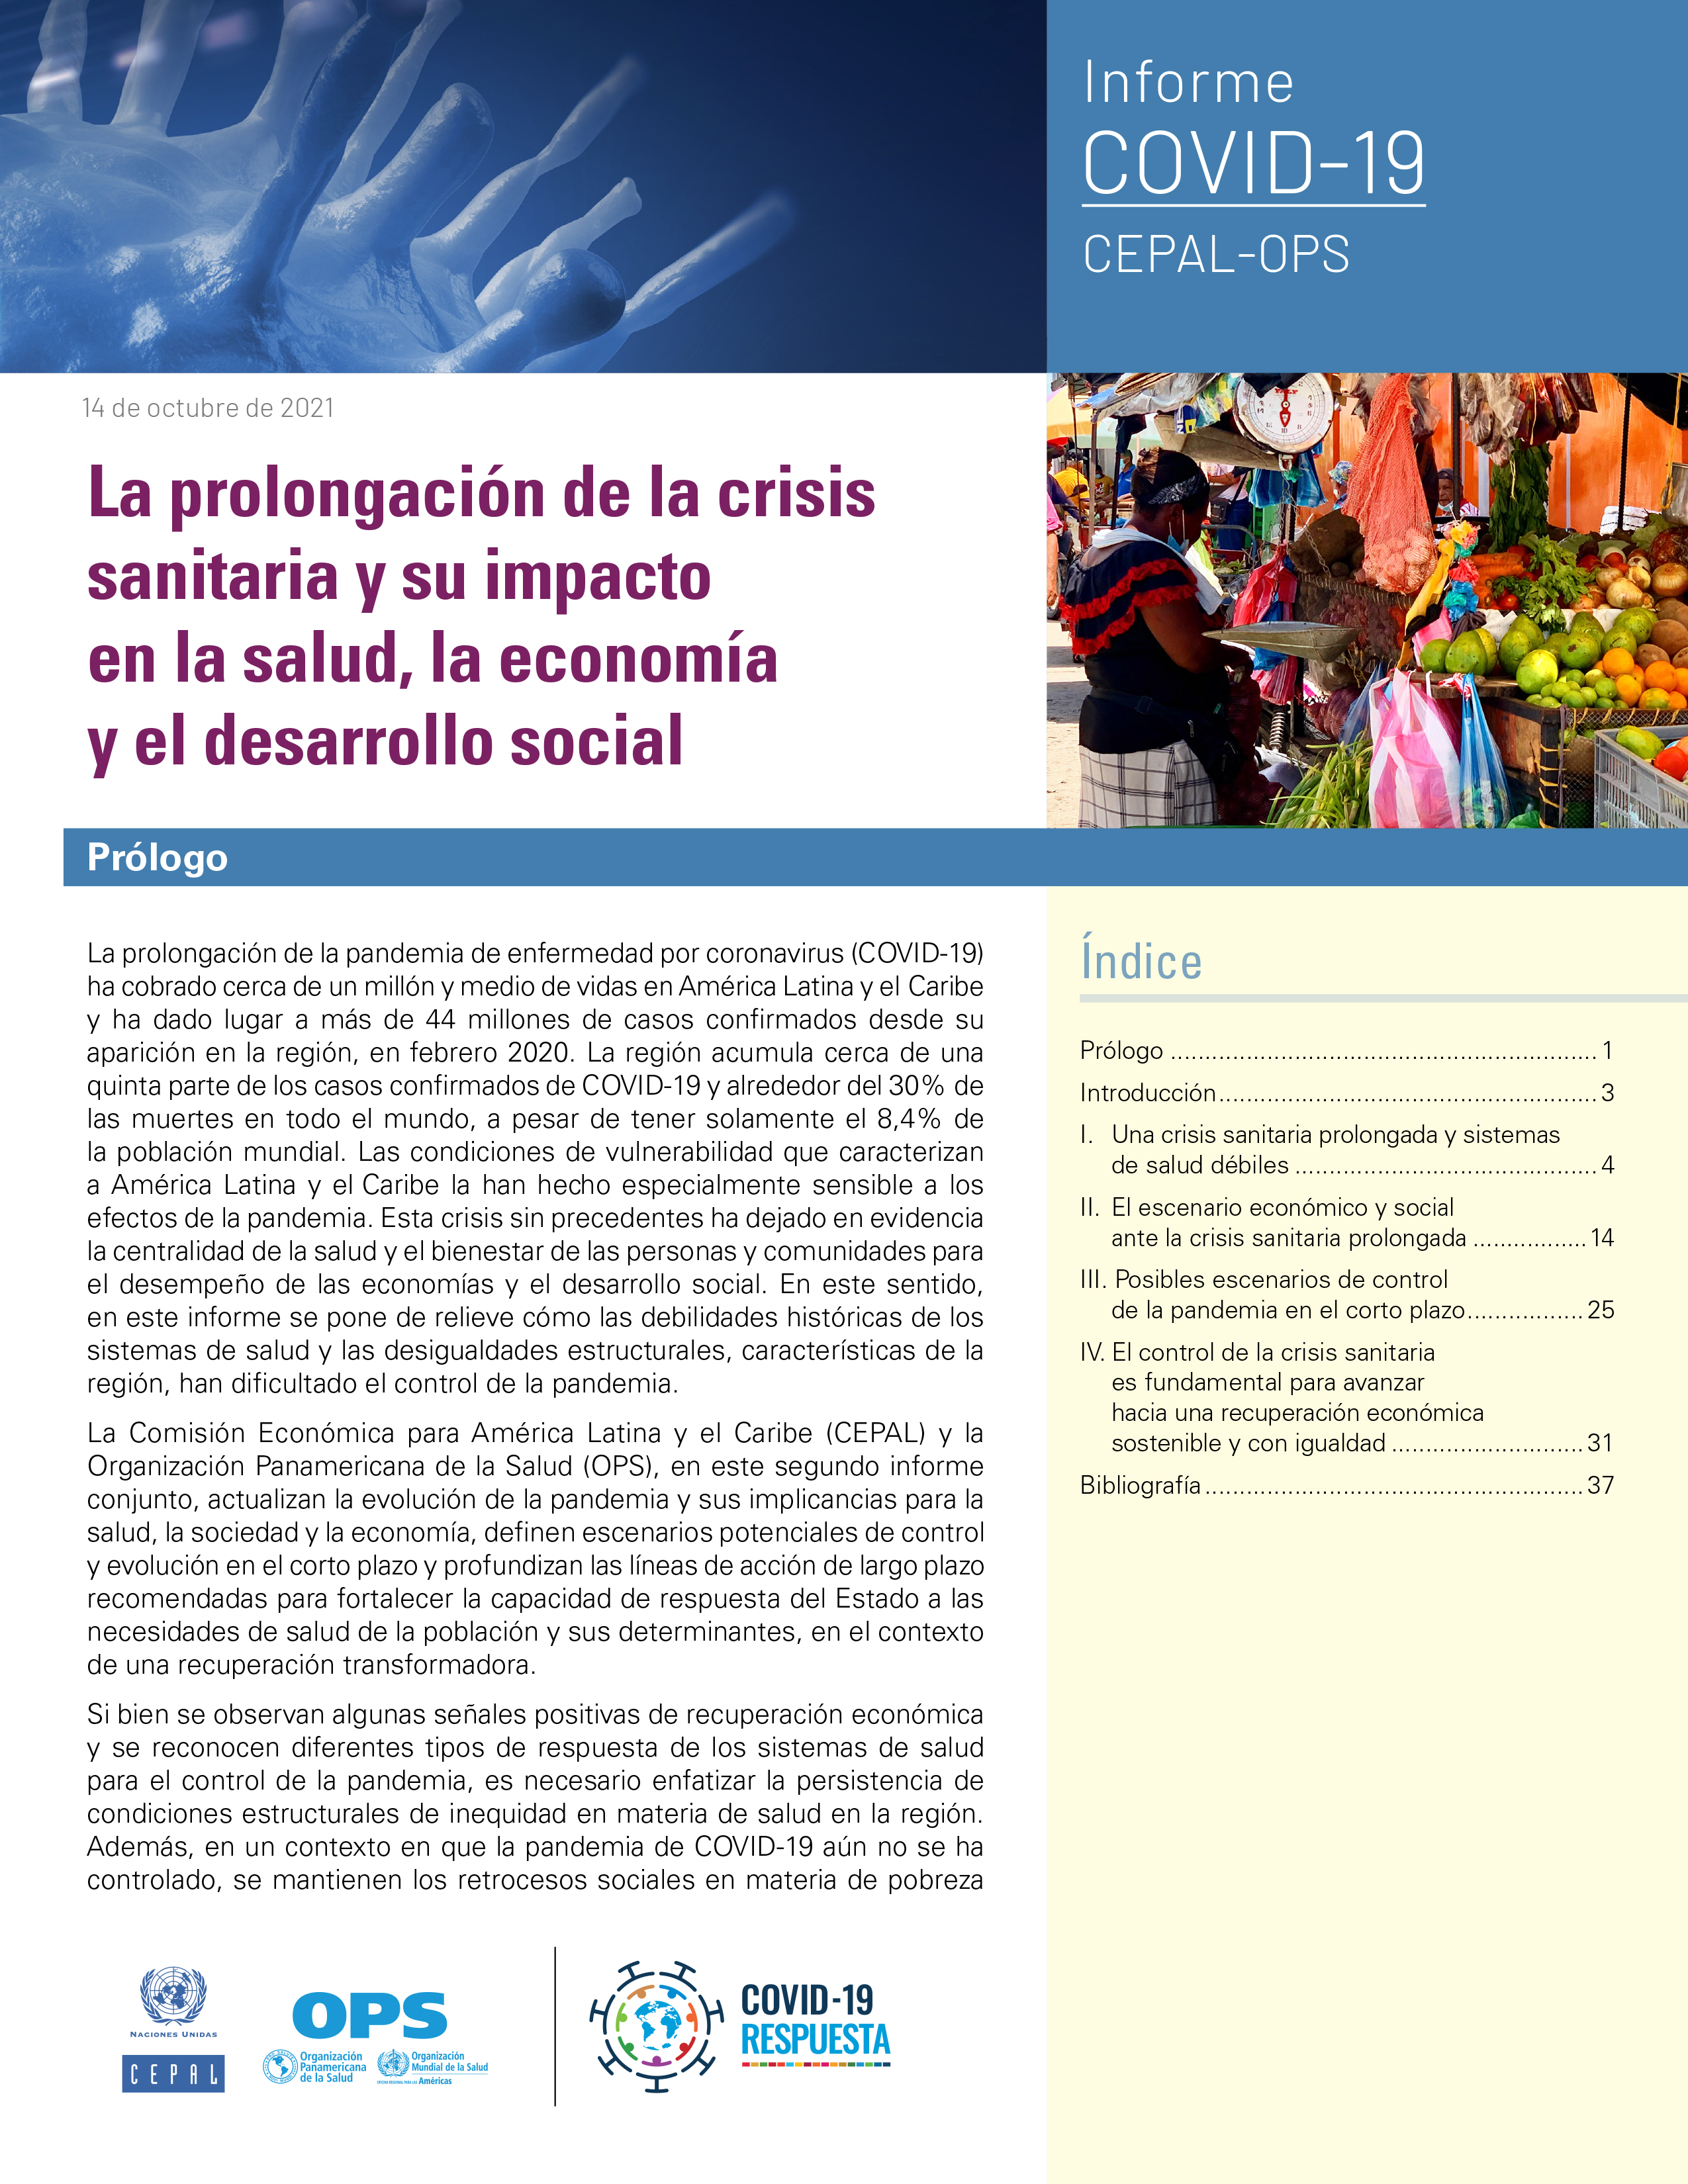 image of La prolongación de la crisis sanitaria y su impacto en la salud, la economía y el desarrollo social